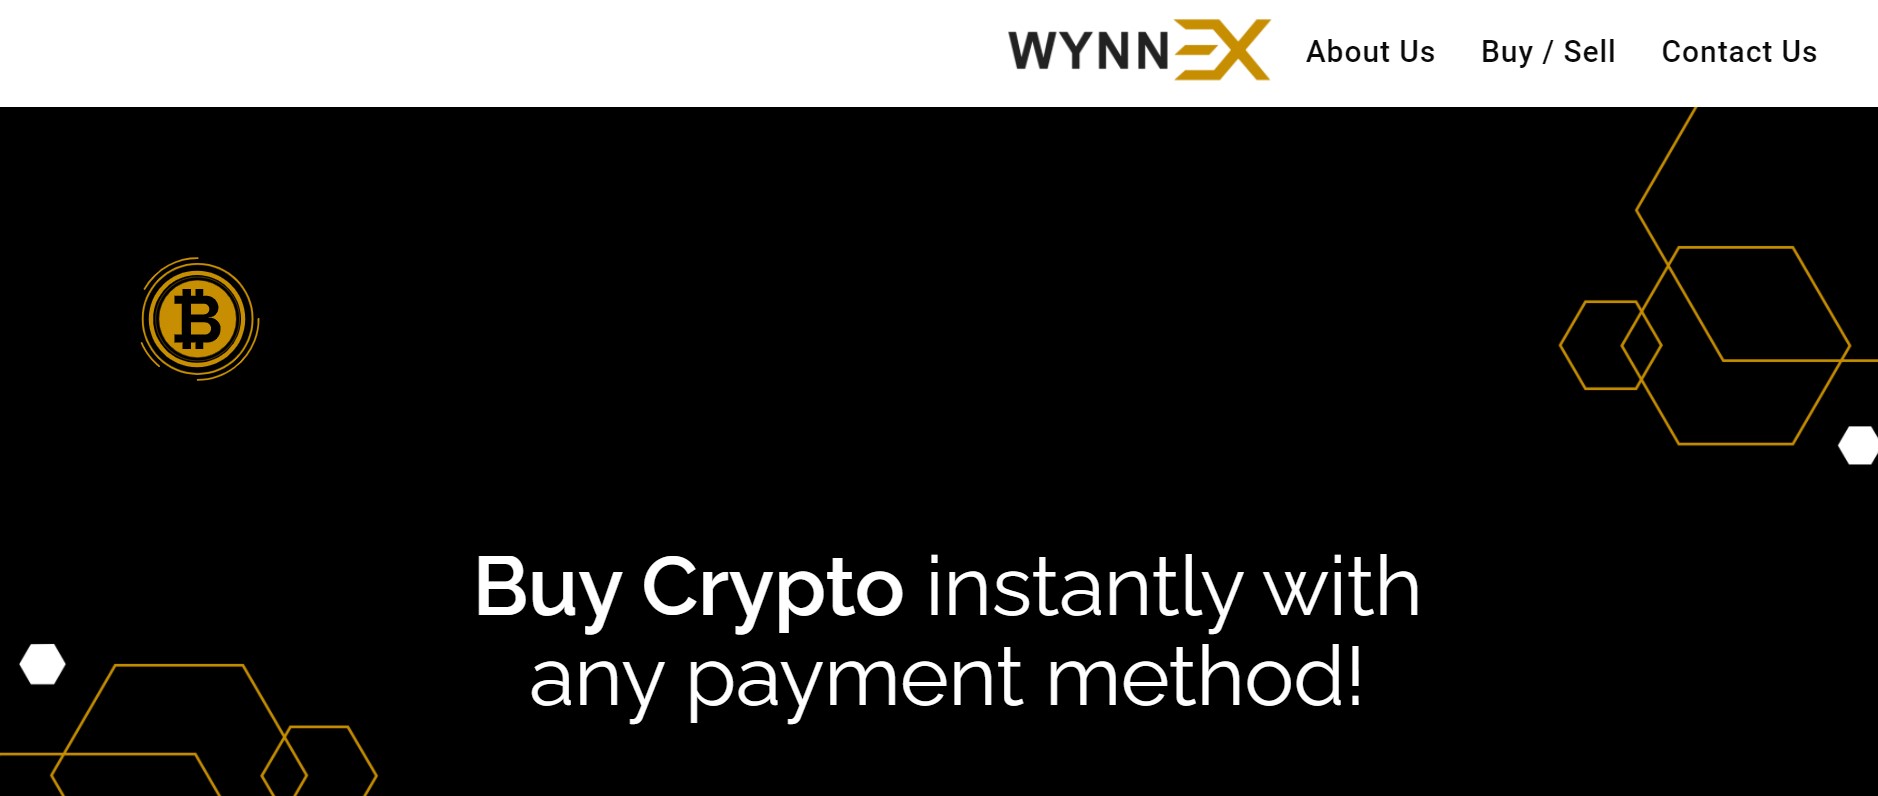 Wynn-EX website